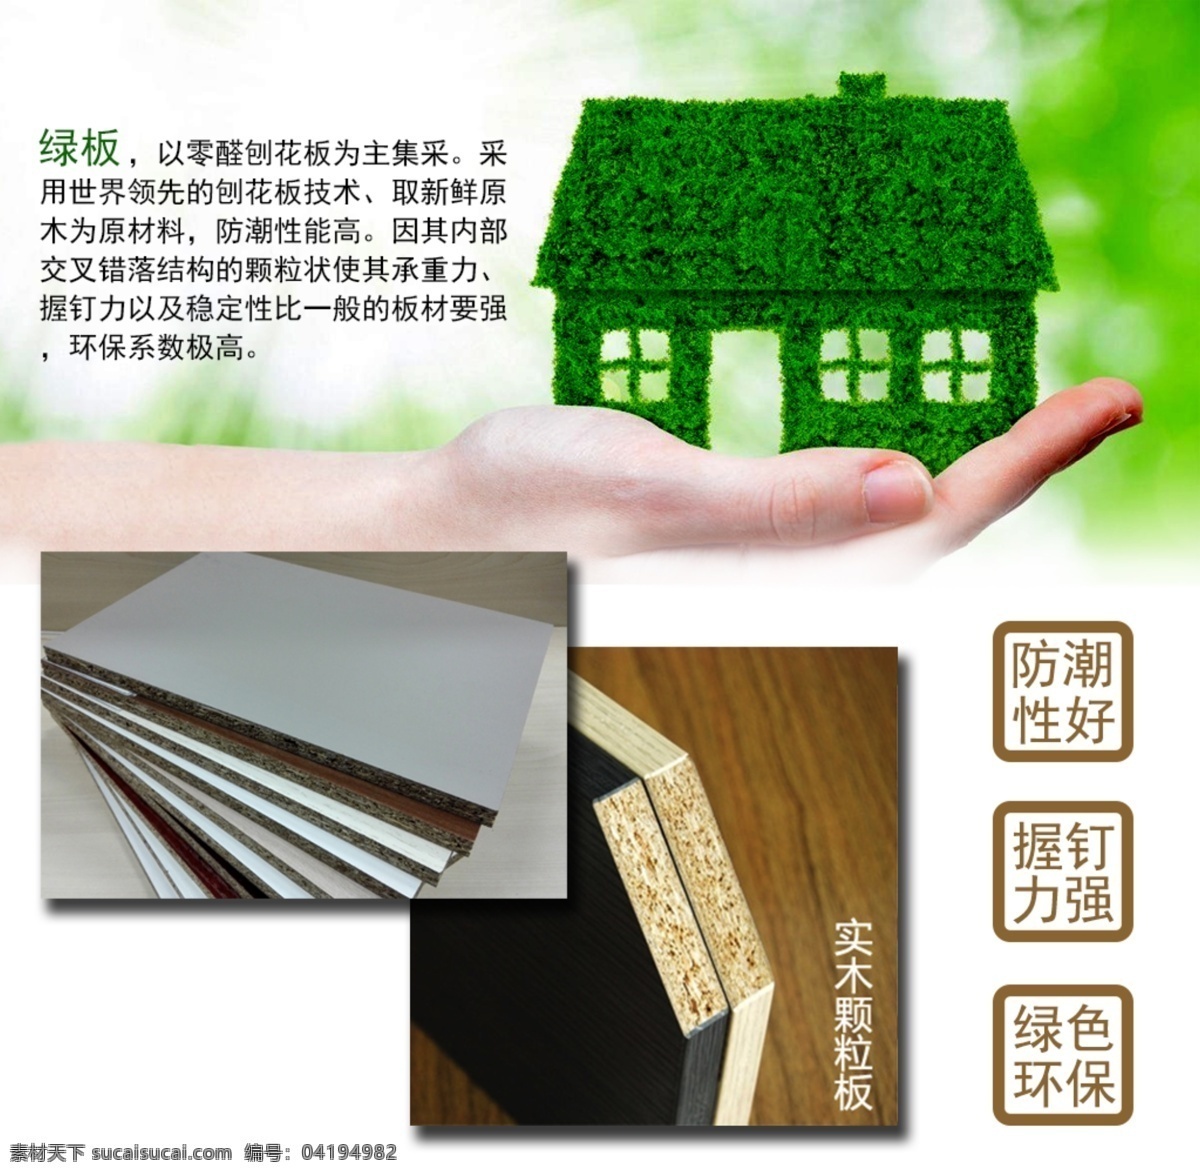 绿板原材料 商品展示 绿色 环保木材 绿板 原材料 白色